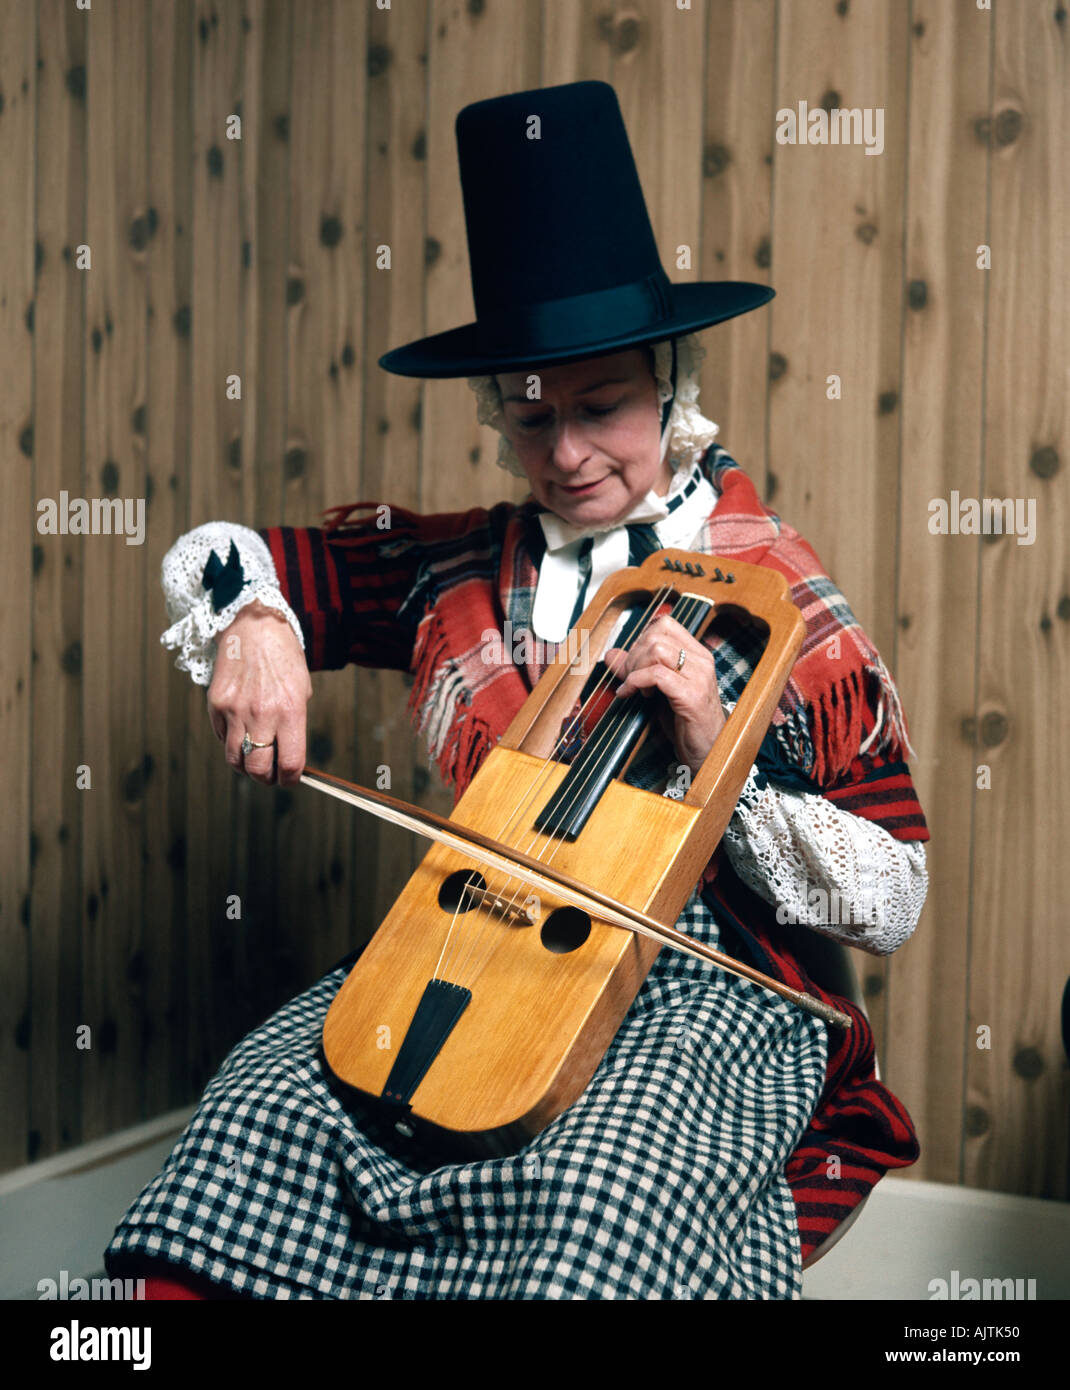 Un Crwth gallois un ancien instrument de musique joué par un musicien en costume traditionnel gallois Banque D'Images